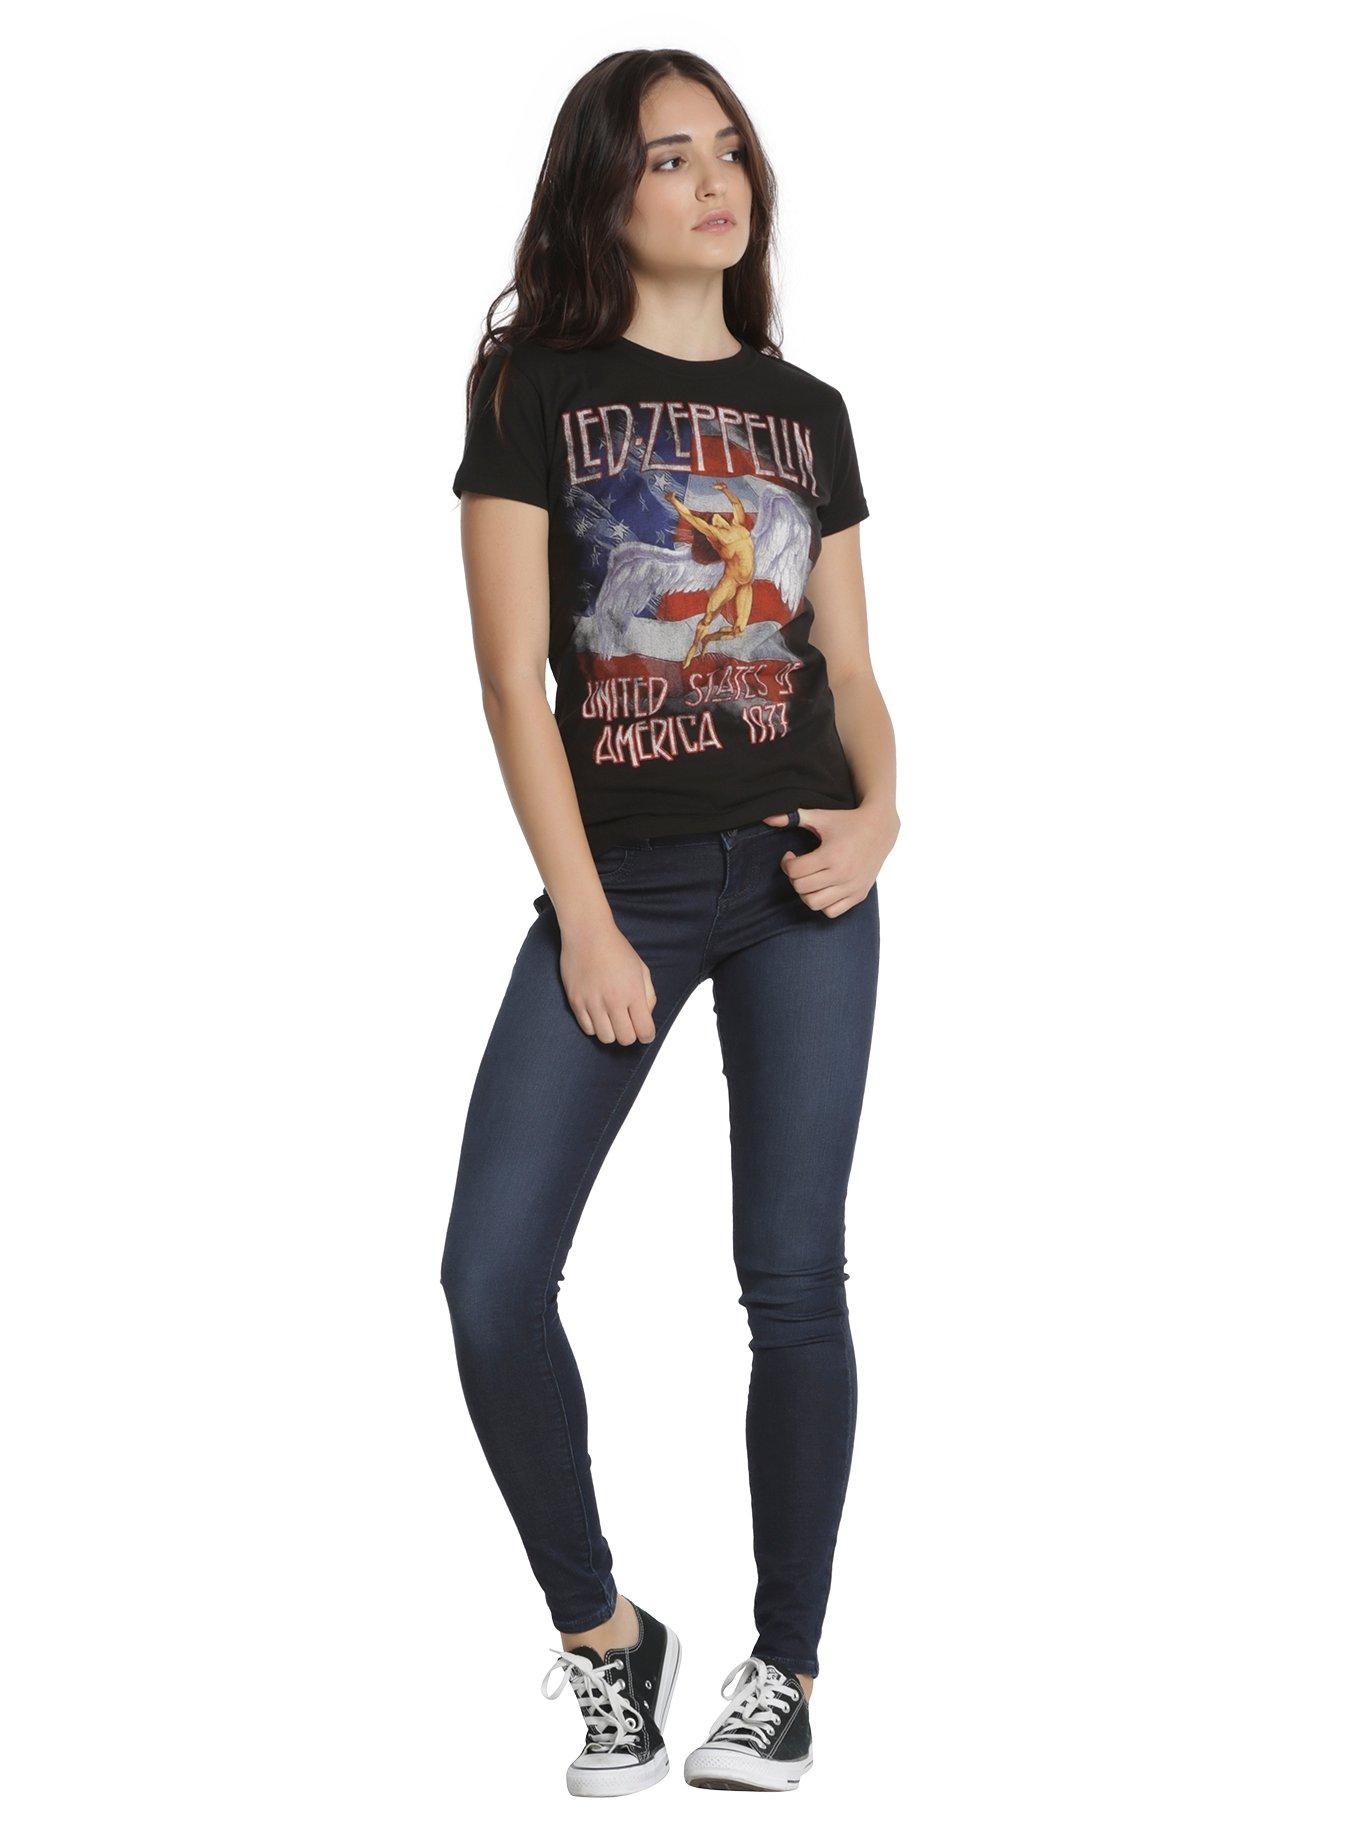 Led Zeppelin America 1977 Girls T-Shirt, , alternate